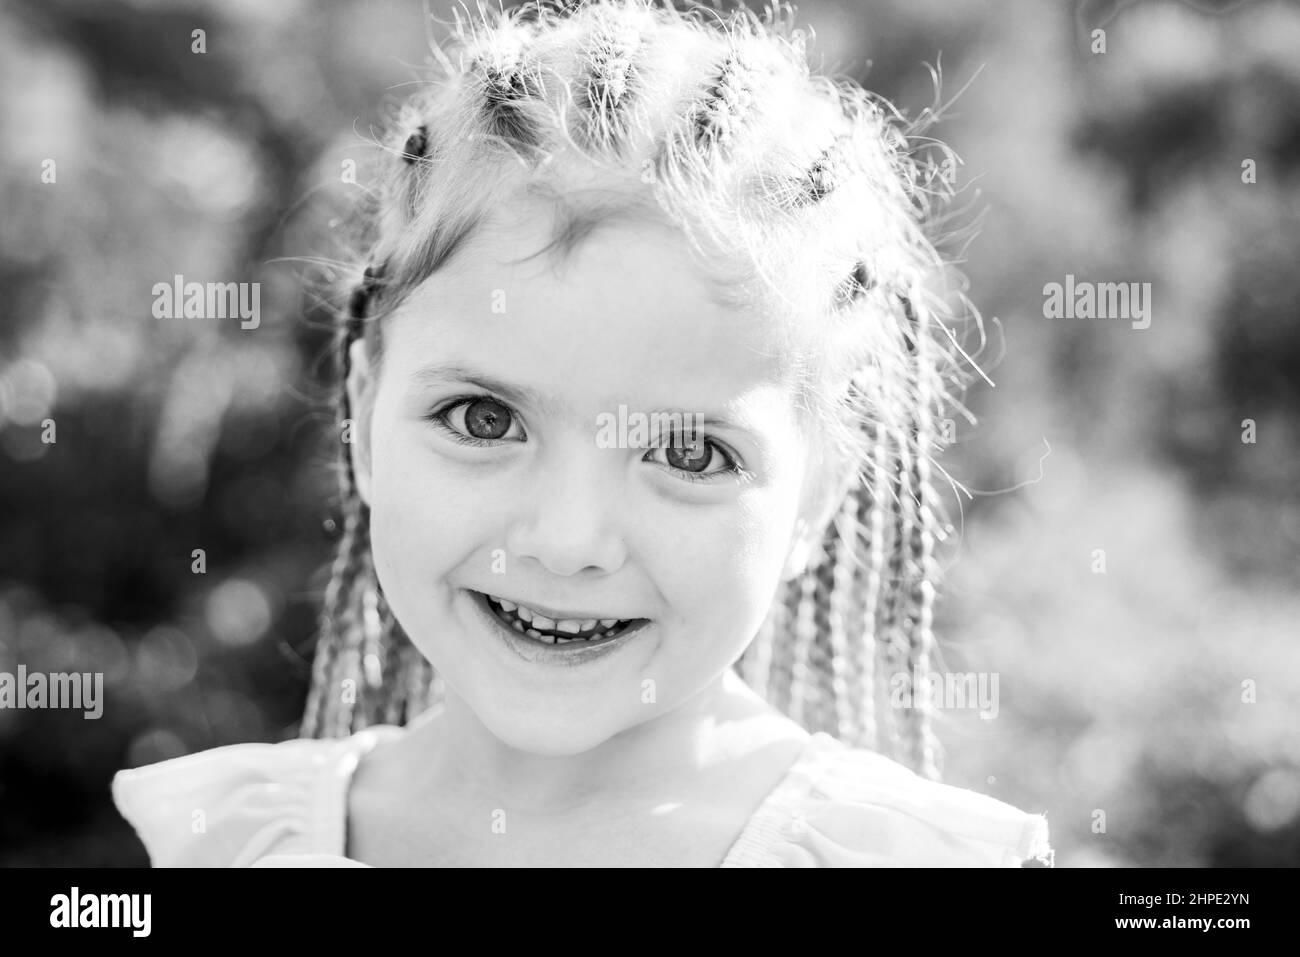 Mädchen lächelt mit Frisur Dreadlocks. Kind mit modischen Haaren im Freien. Glückliches Kind draußen. Stockfoto